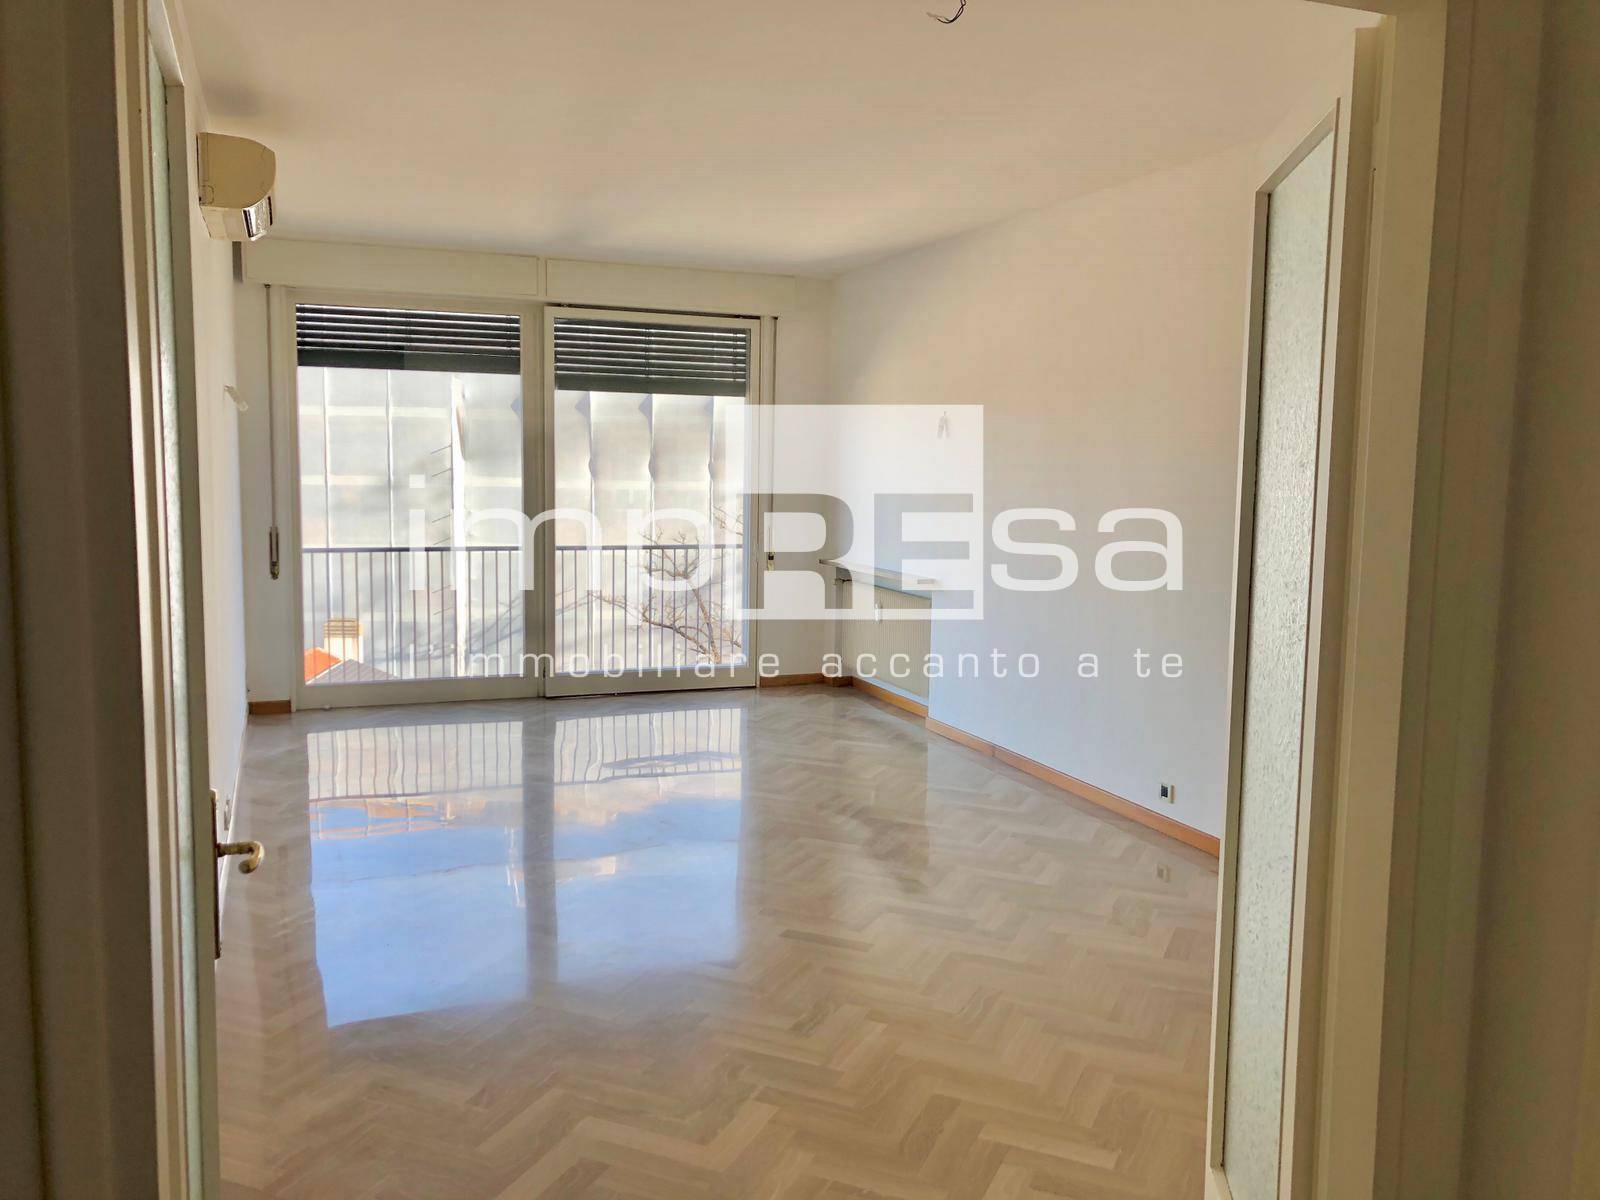 Appartamento in affitto a Treviso, 5 locali, zona Località: FuoriMura, prezzo € 1.000 | PortaleAgenzieImmobiliari.it